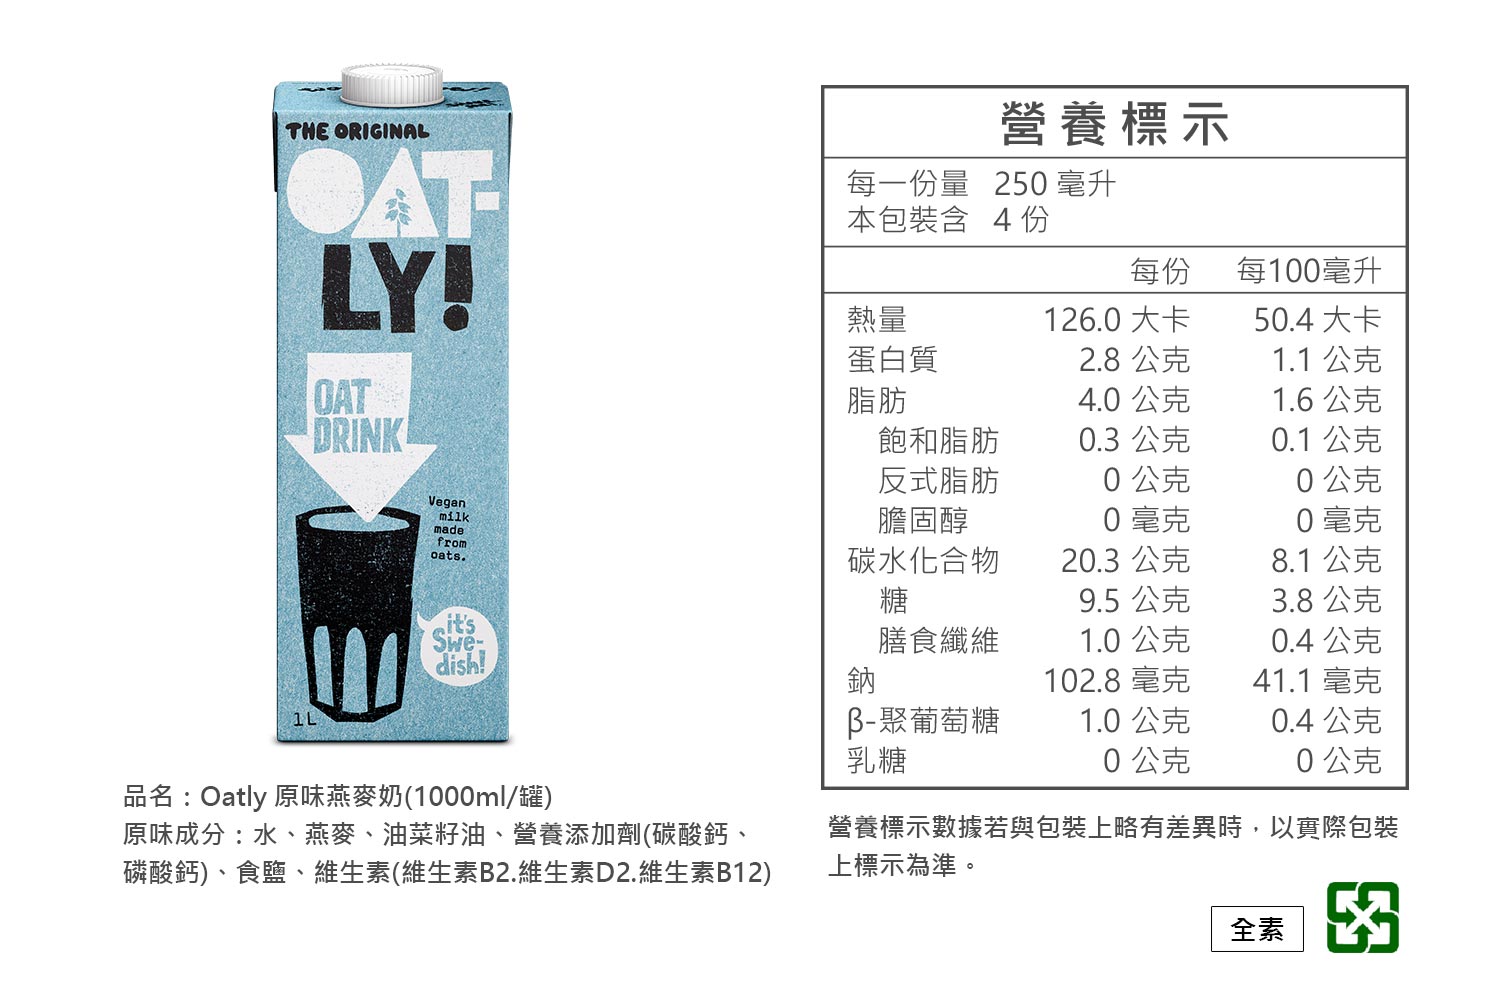 OATLY燕麥奶營養標示